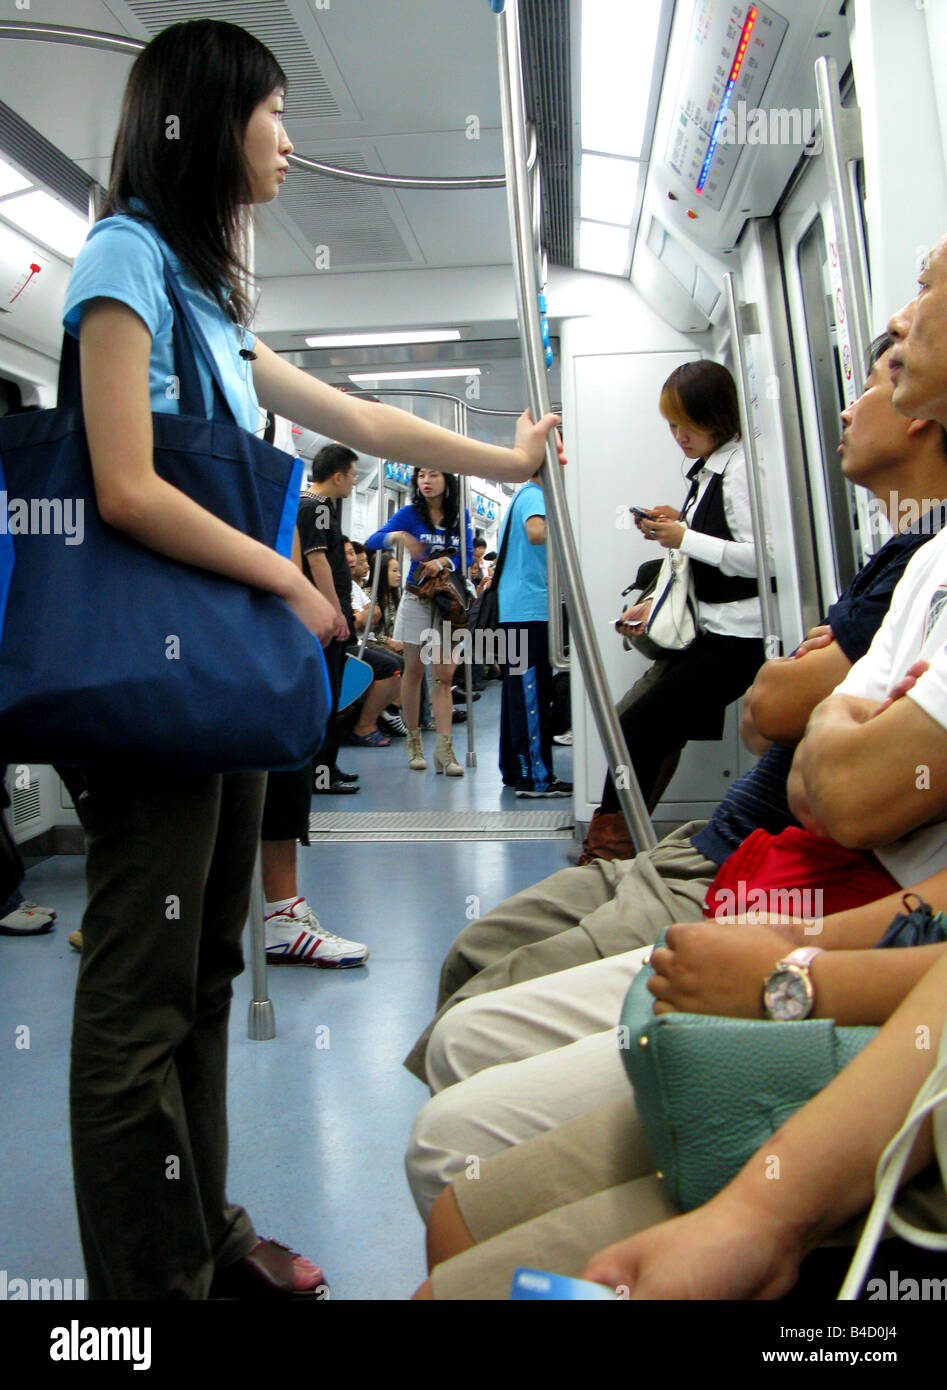 The underground subway metro train system in Beijing China Stock Photo